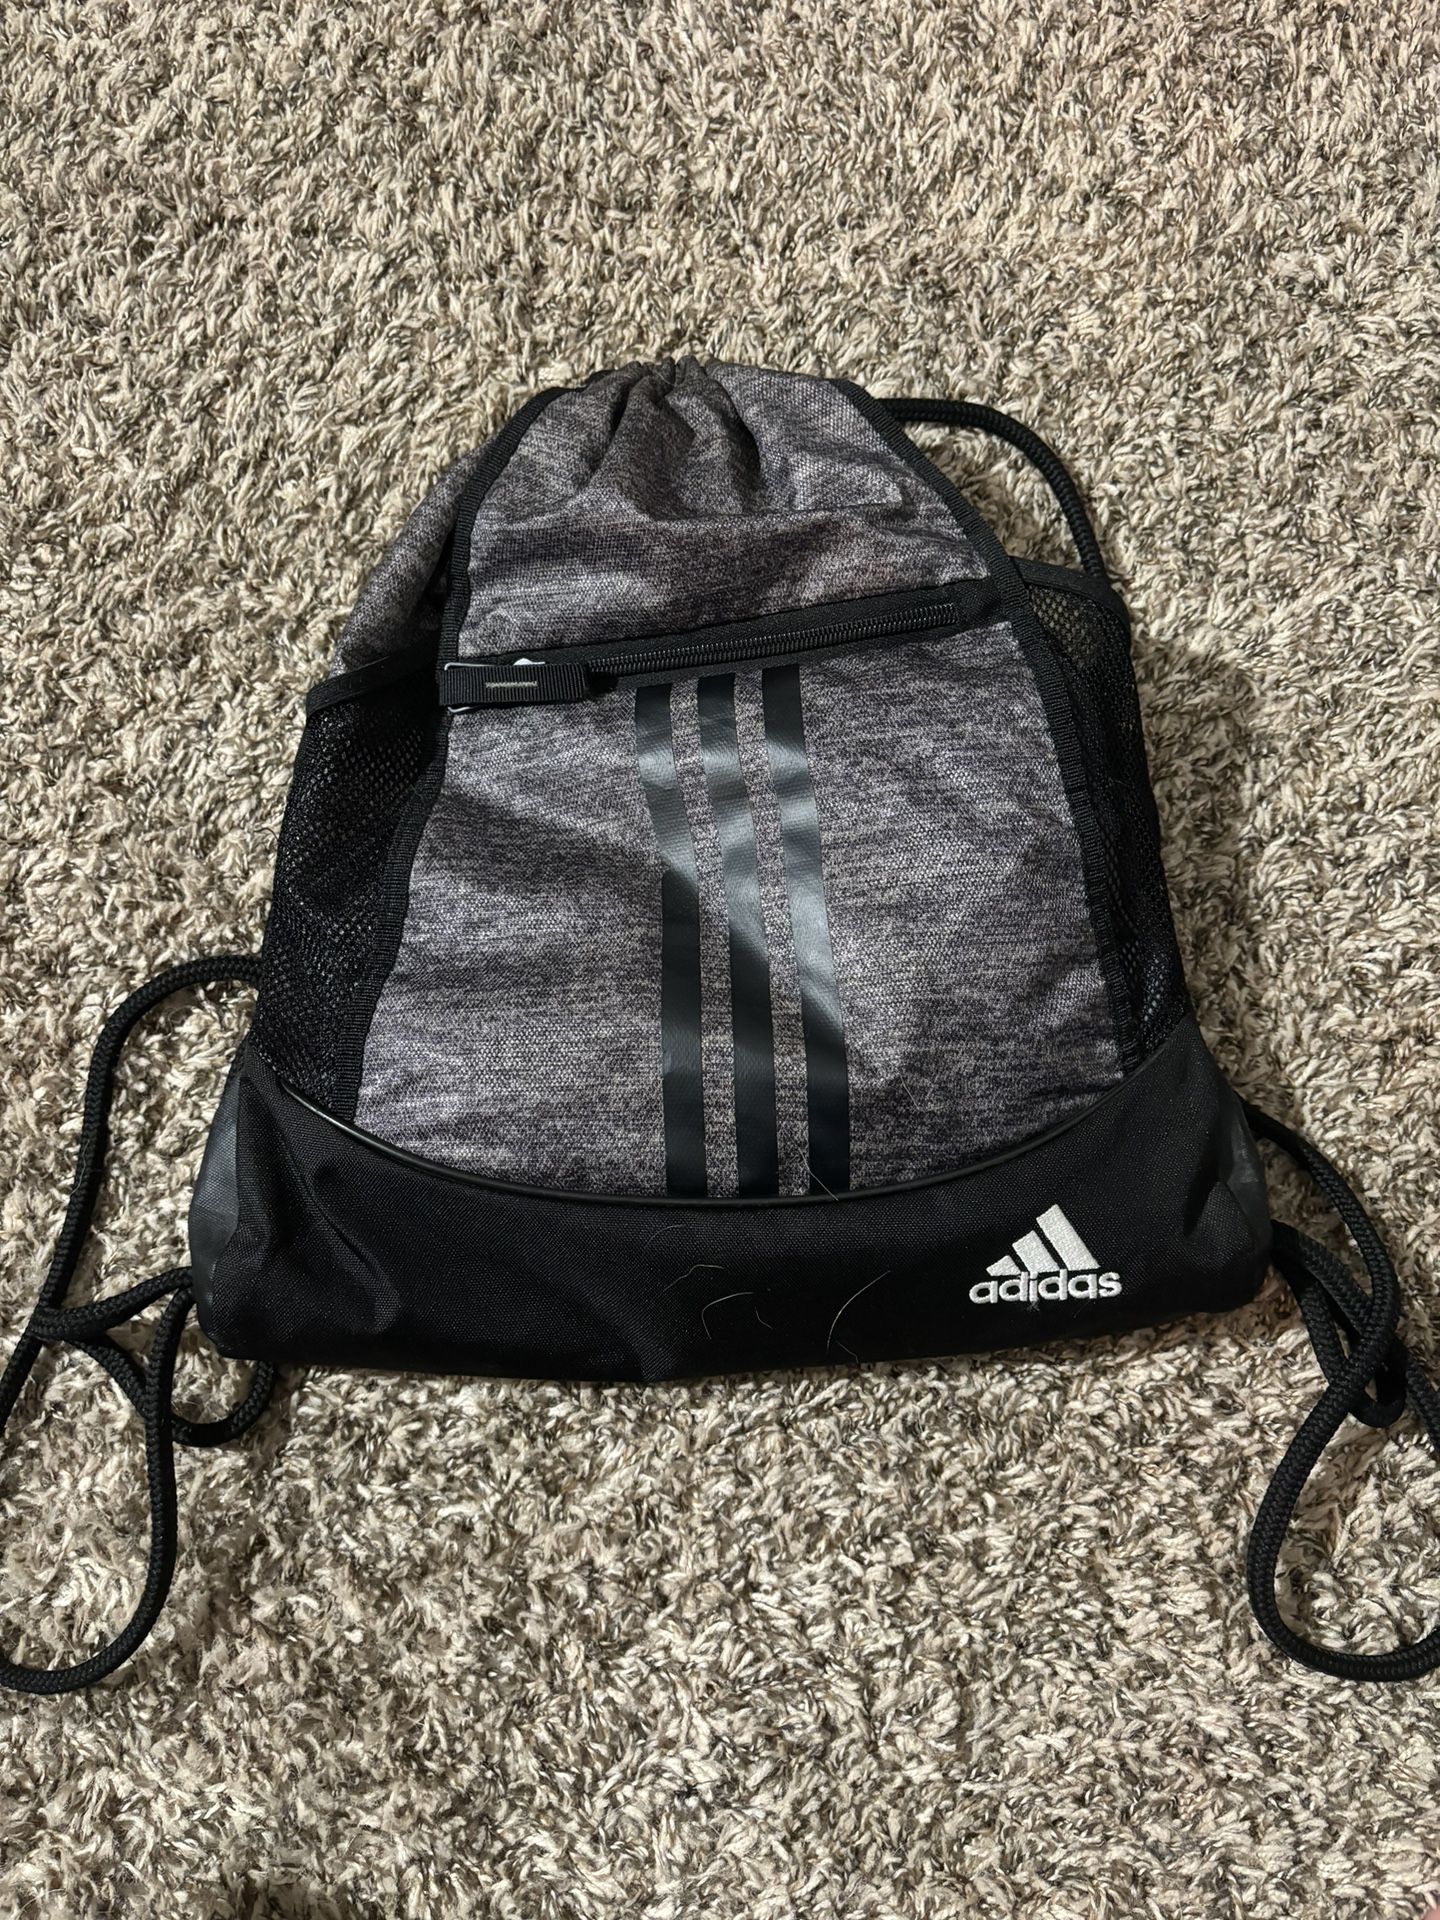 Adidas Draw String Bag 